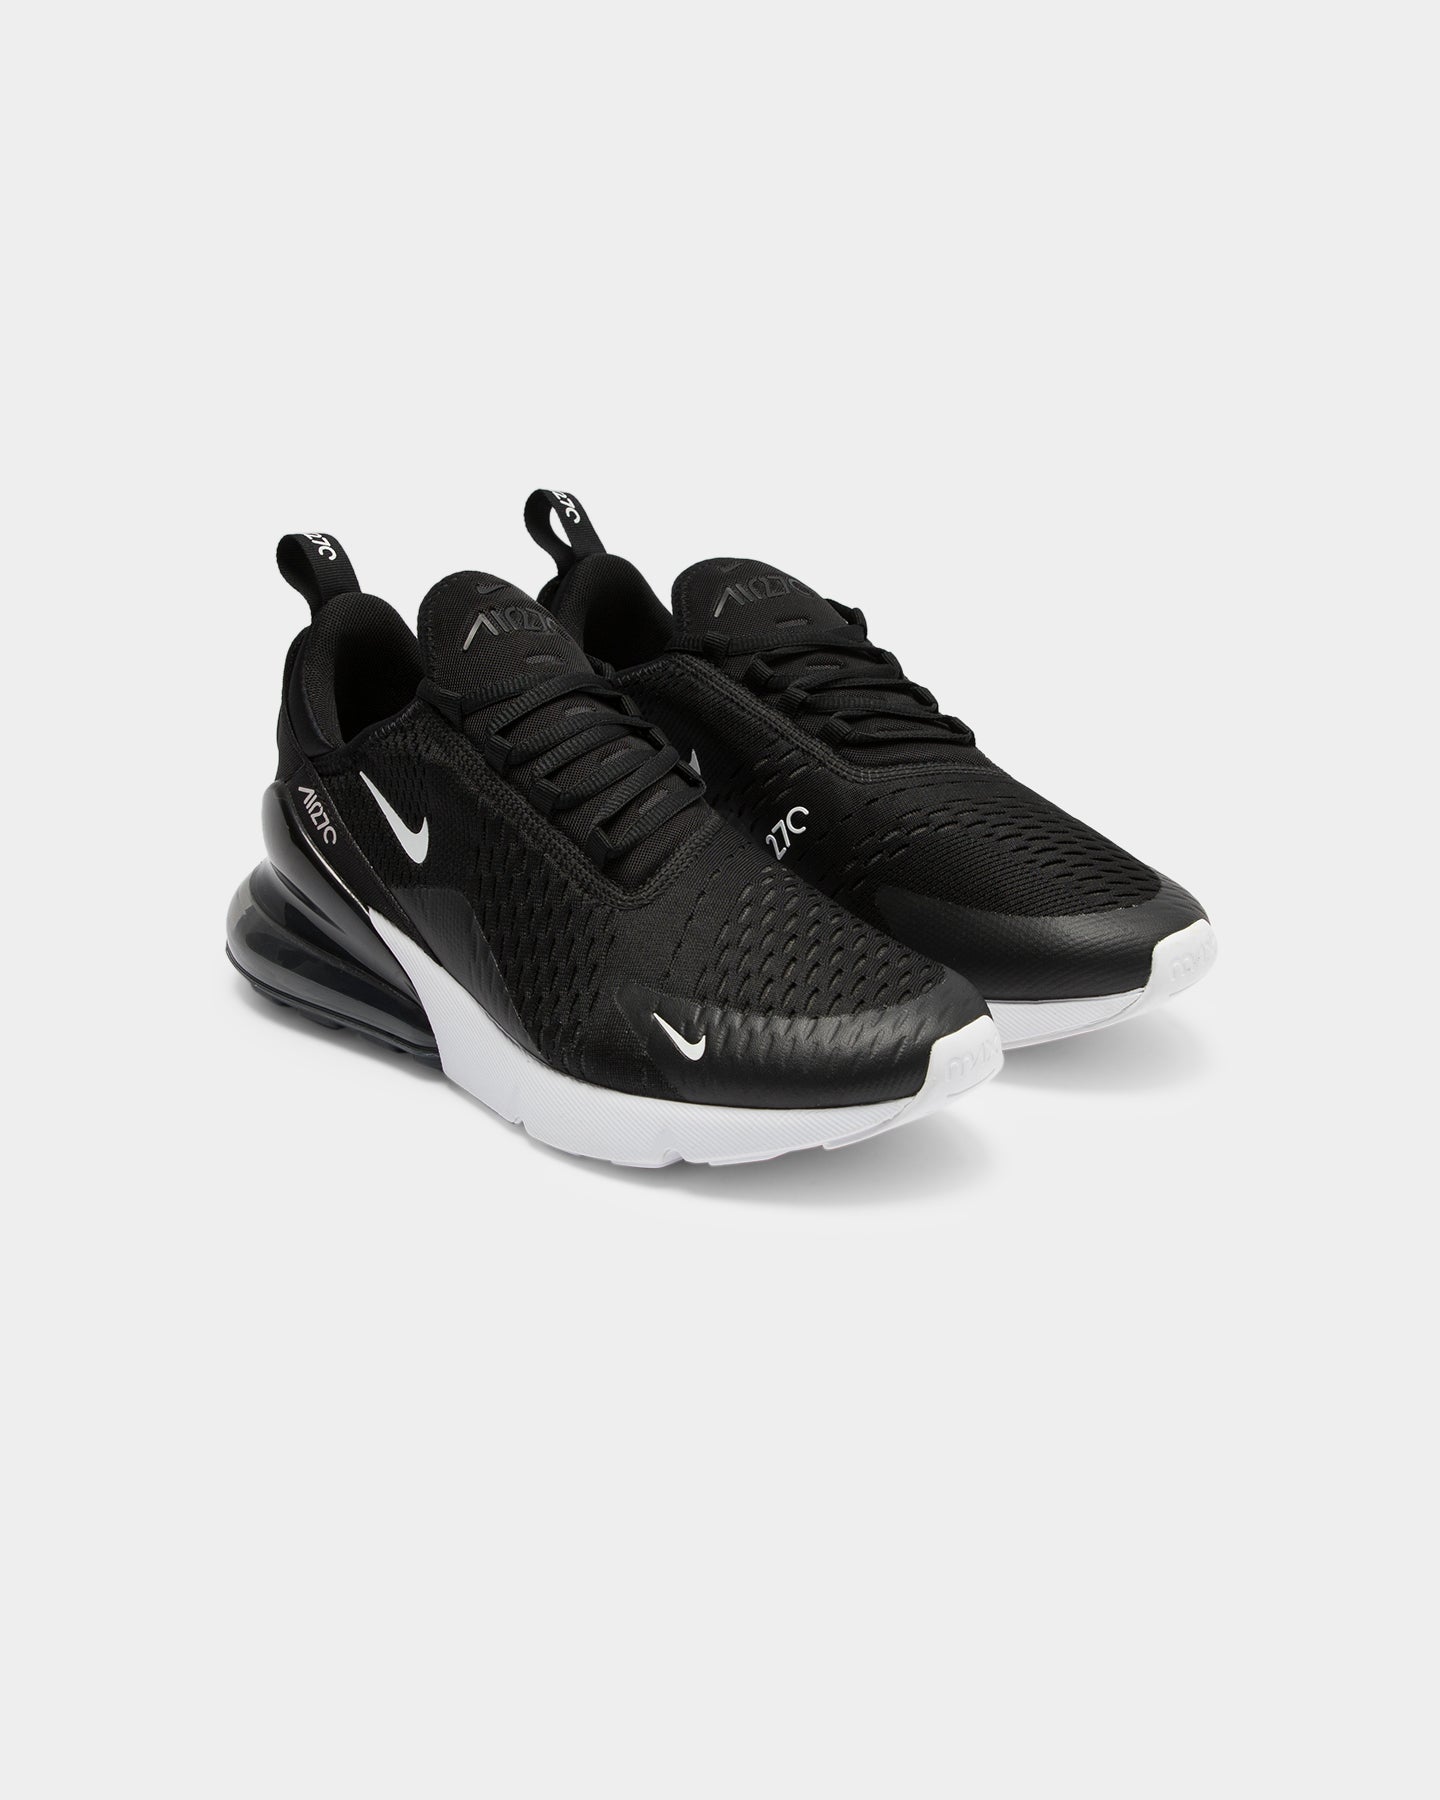 Nike Air Max 270 Black/White | Culture 